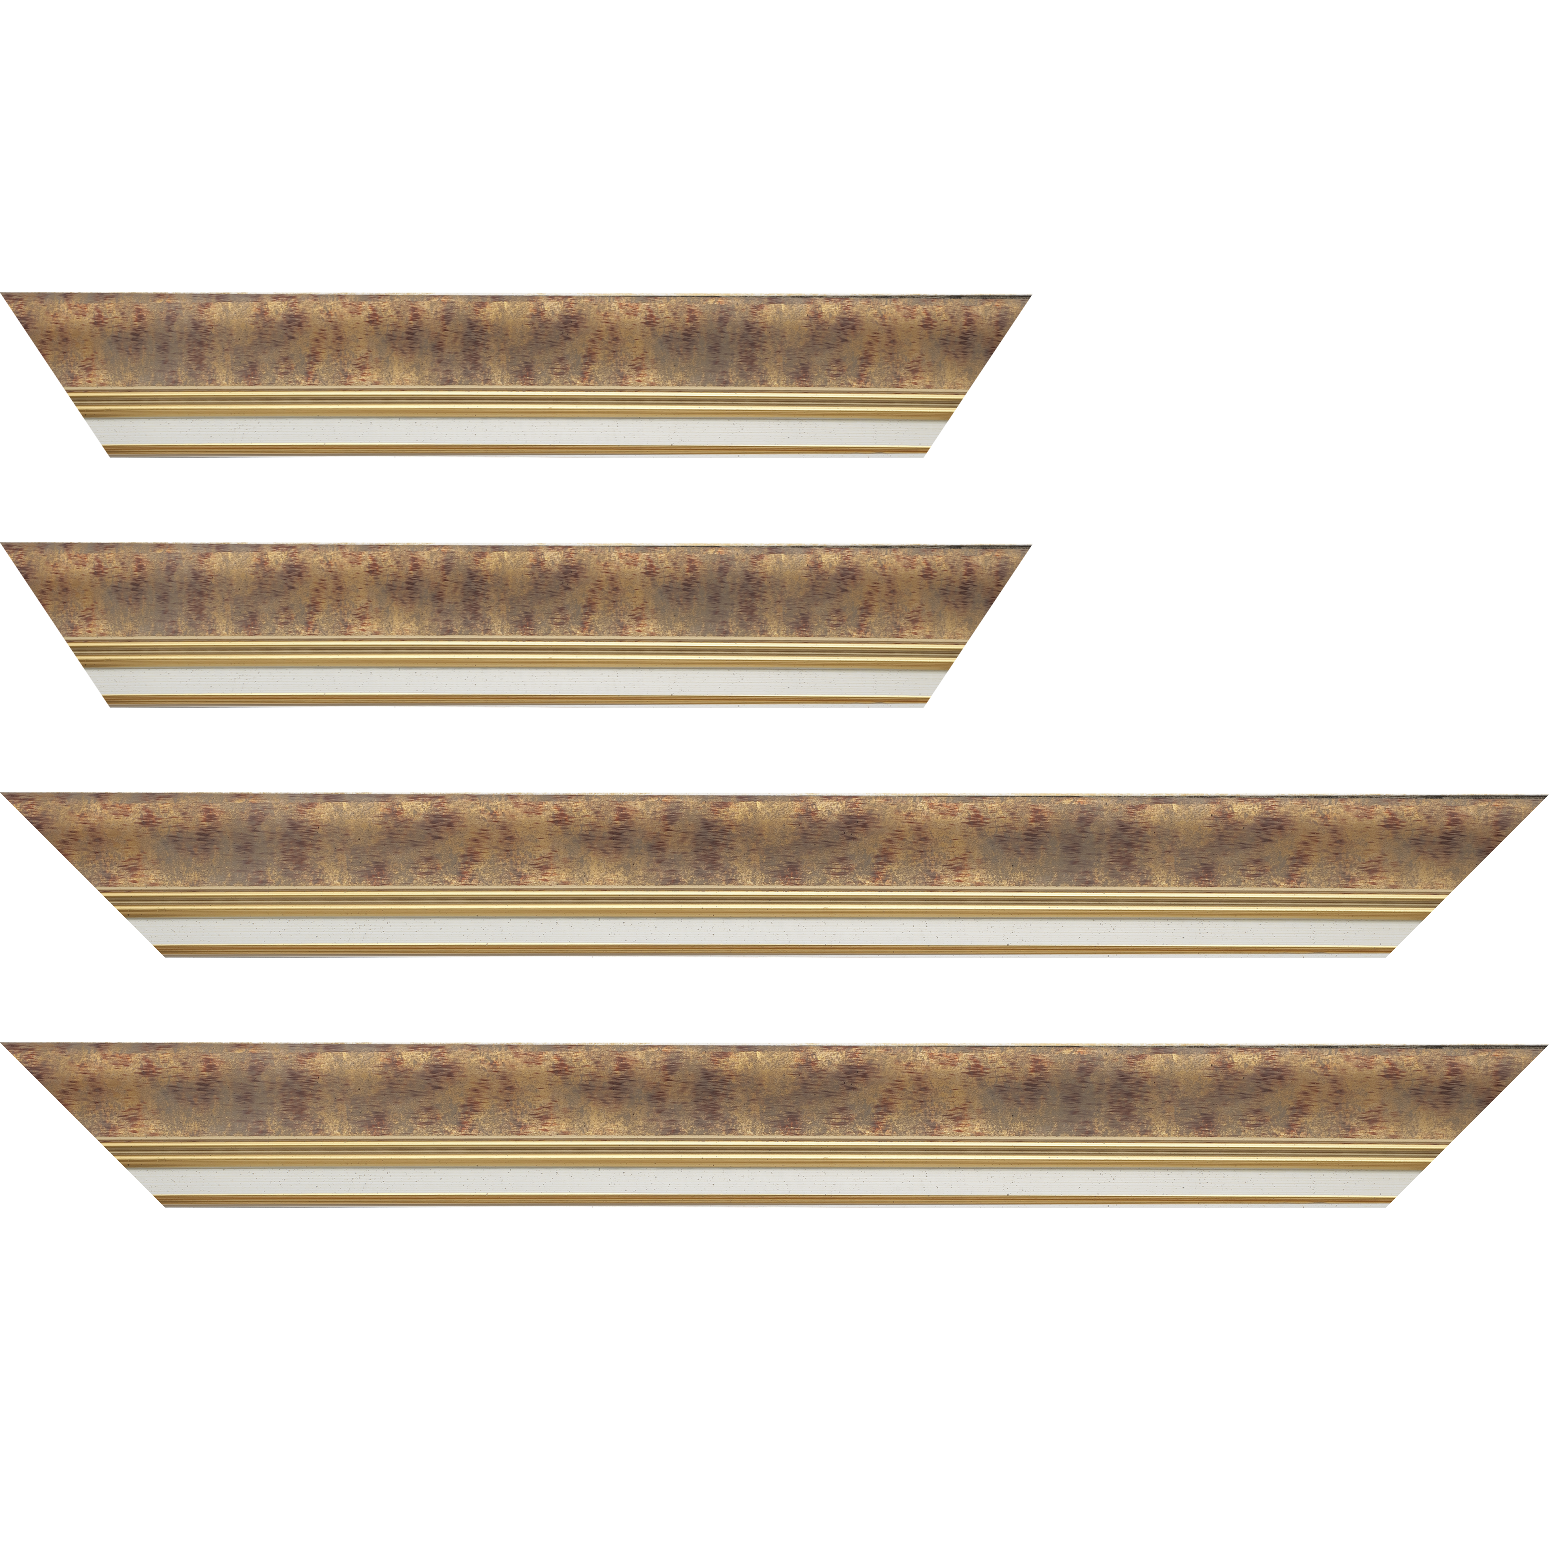 Baguette bois profil incurvé largeur 5.7cm de couleur bordeaux patiné fond or marie louise blanche mouchetée filet or intégré - 40x60